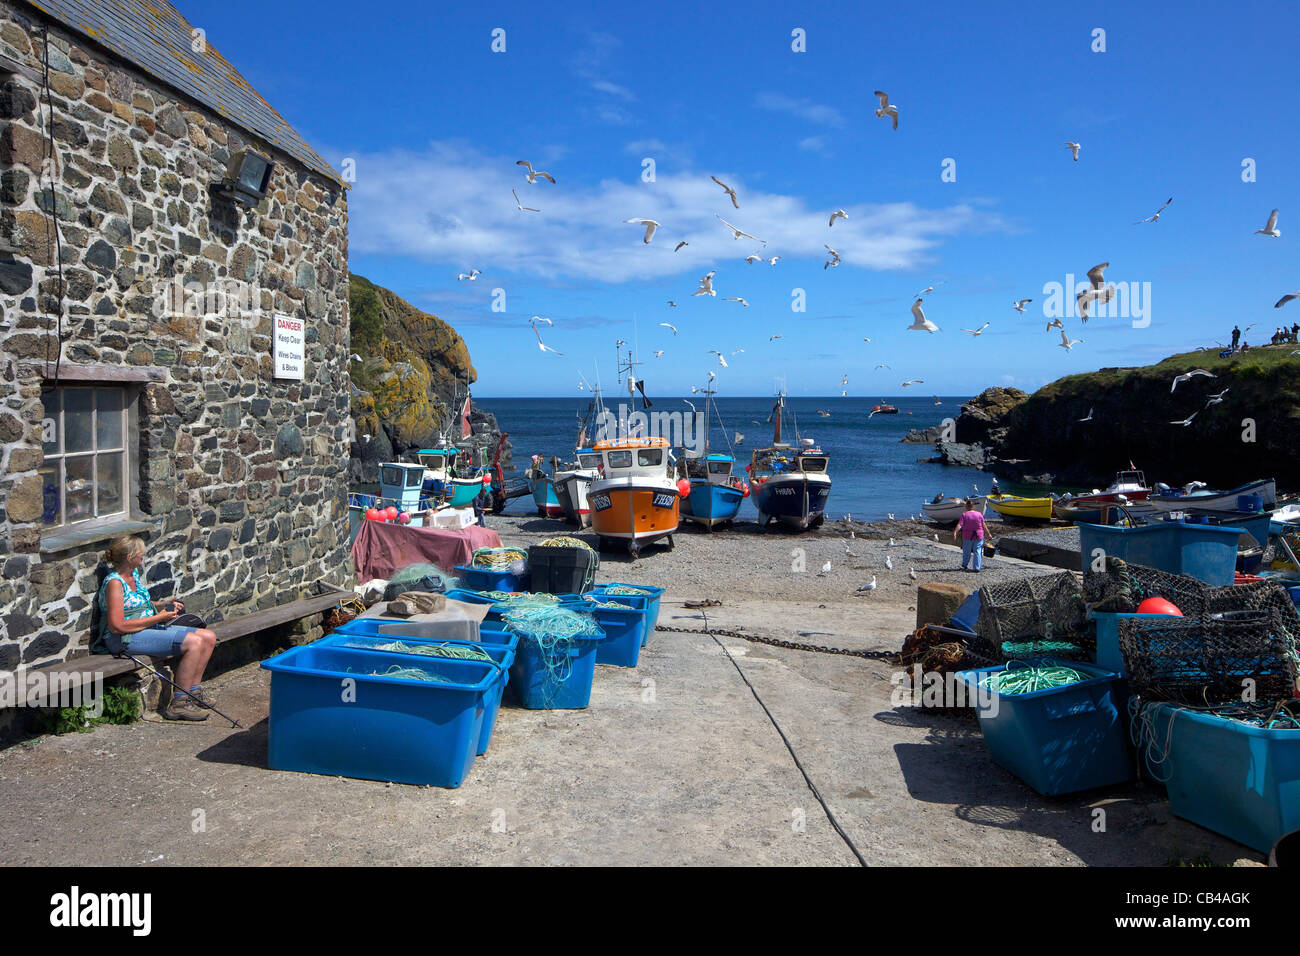 Angelboote/Fischerboote am Strand von Cadgwith, Halbinsel Lizard, Cornwall, Südwestengland, UK, Vereinigtes Königreich, GB, Großbritannien, B Stockfoto